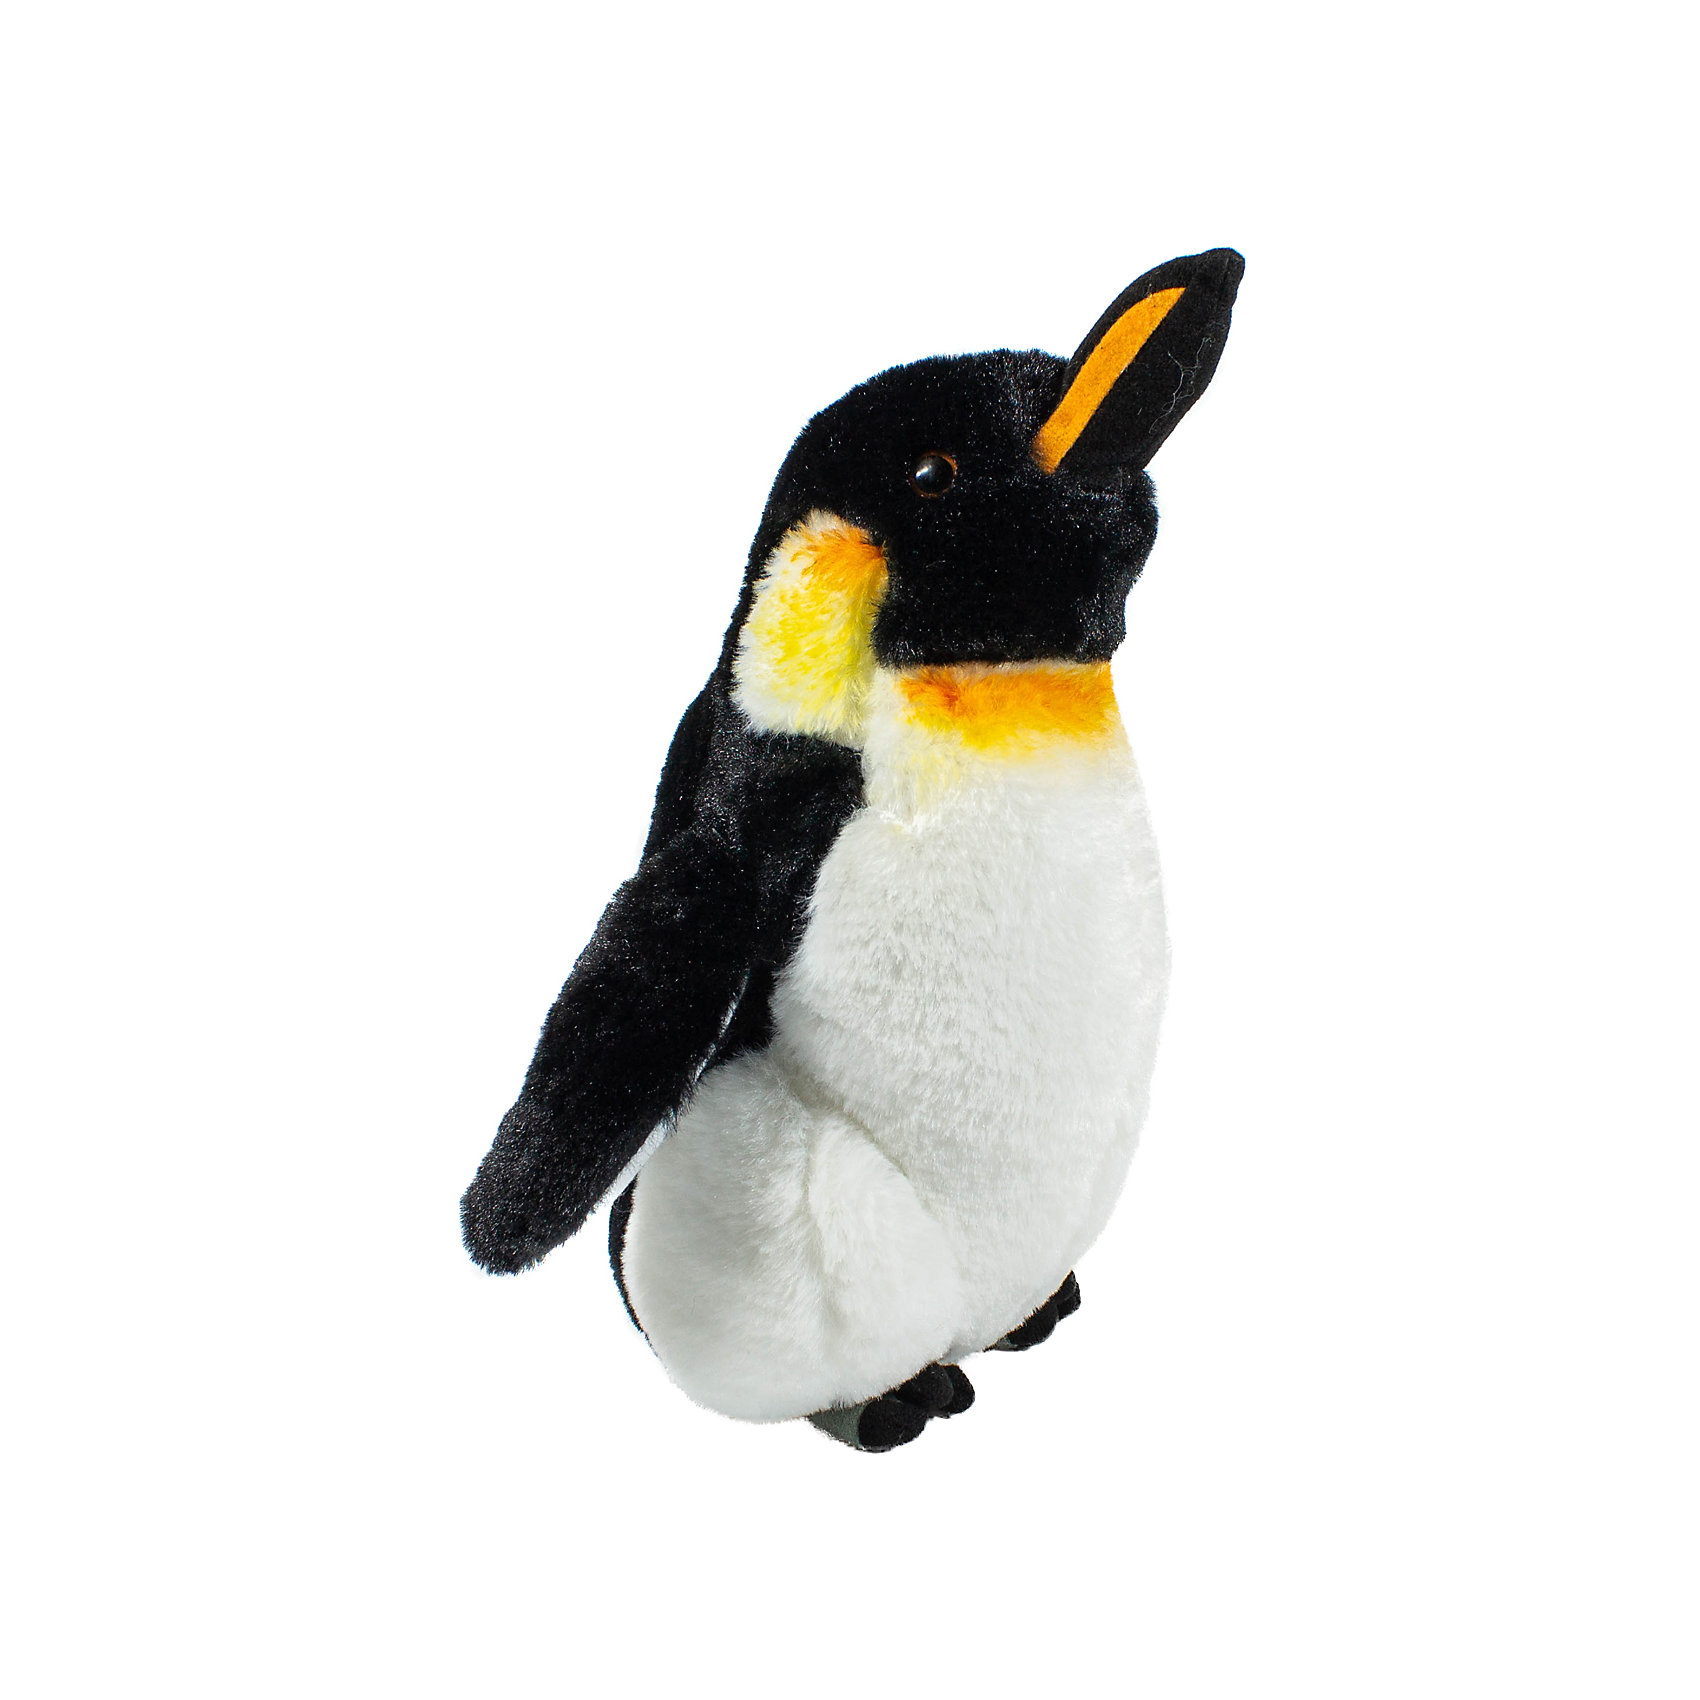 Мягкая игрушка Императорский Пингвин, 30 см Wild Republic 11318460